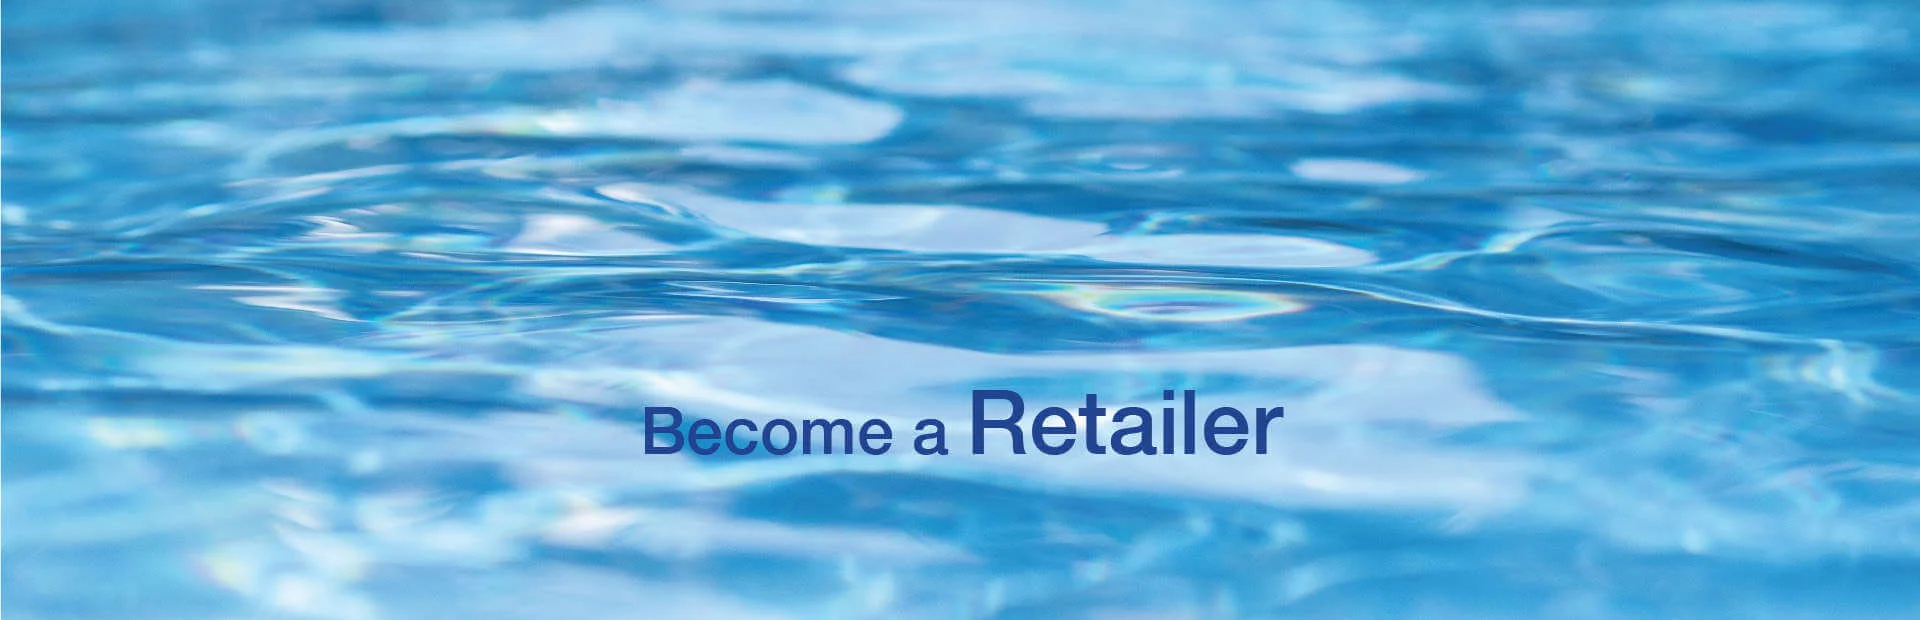 Become a Retailer